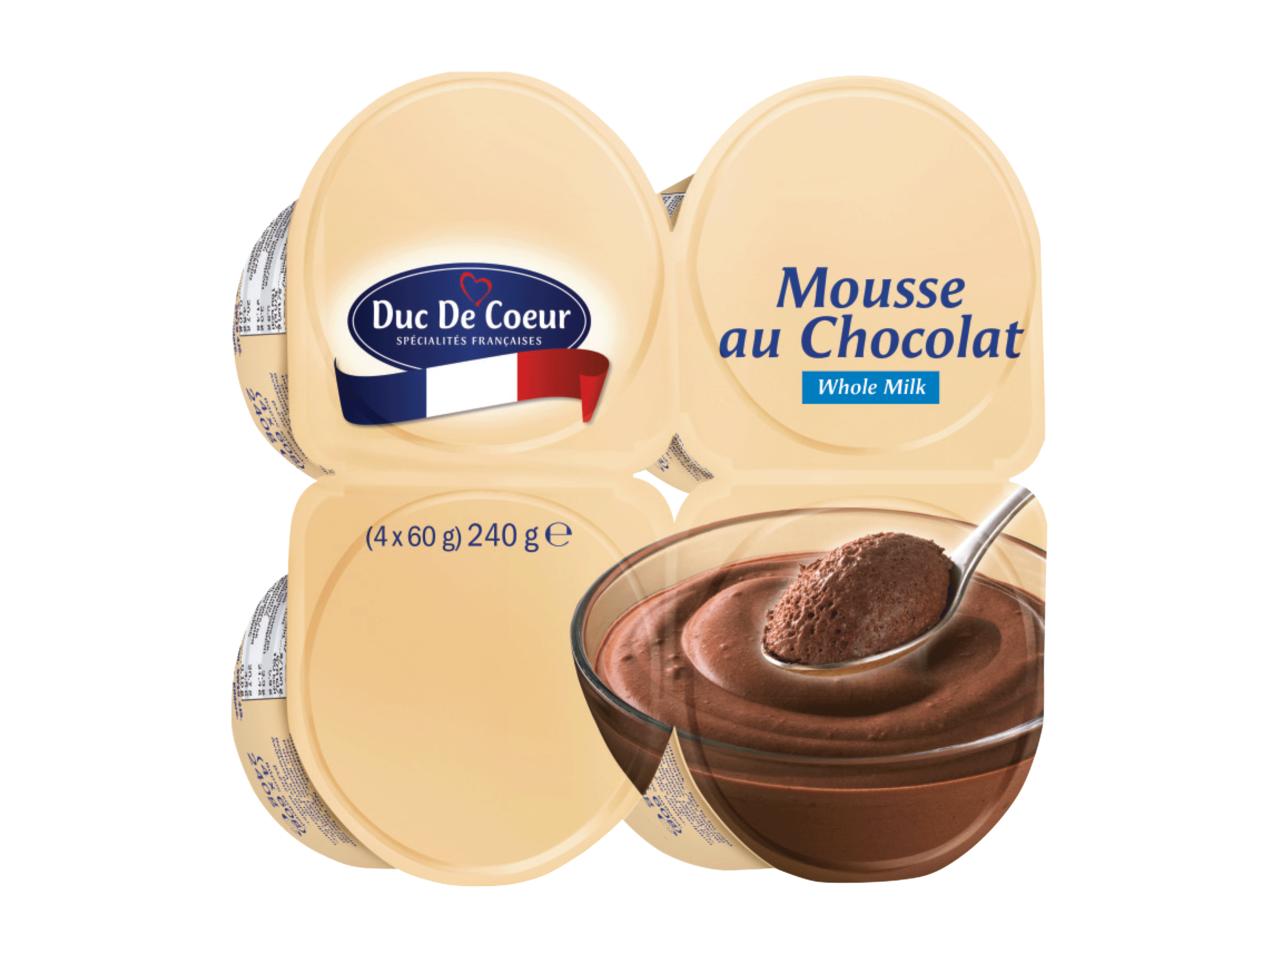 DUC DE COEUR Chocolate Mousse